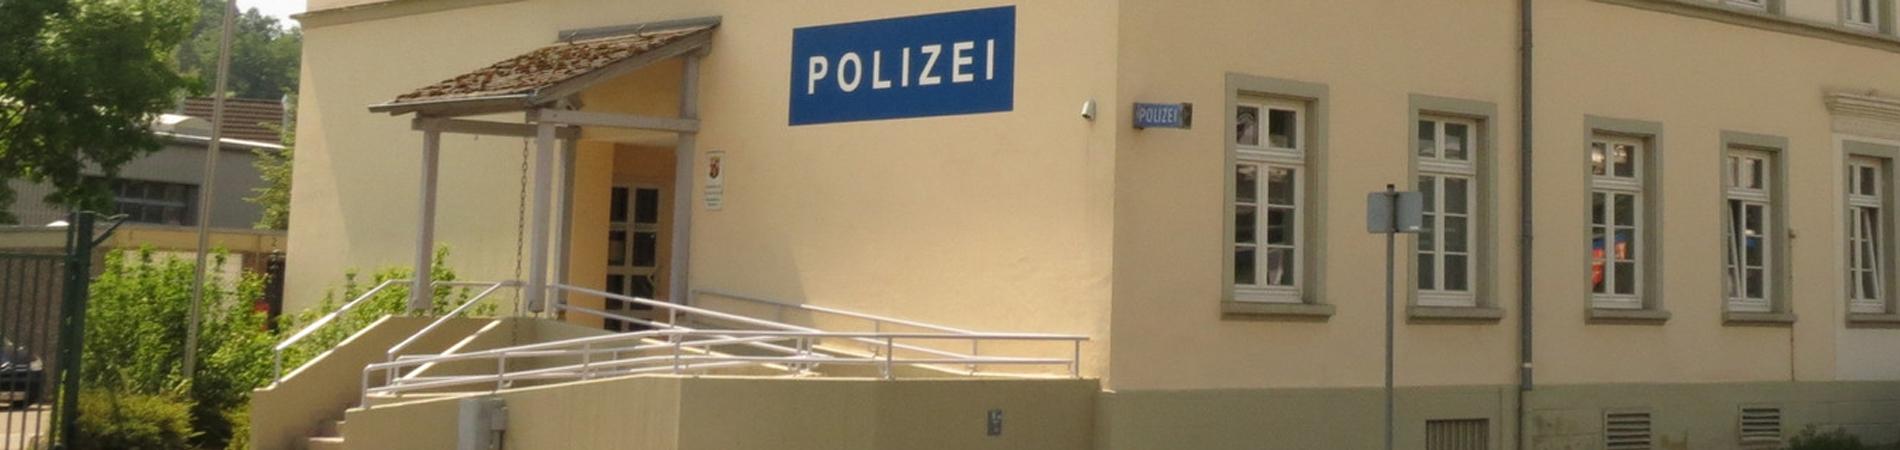 Dienstgebäude Polizeiinspektion Birkenfeld